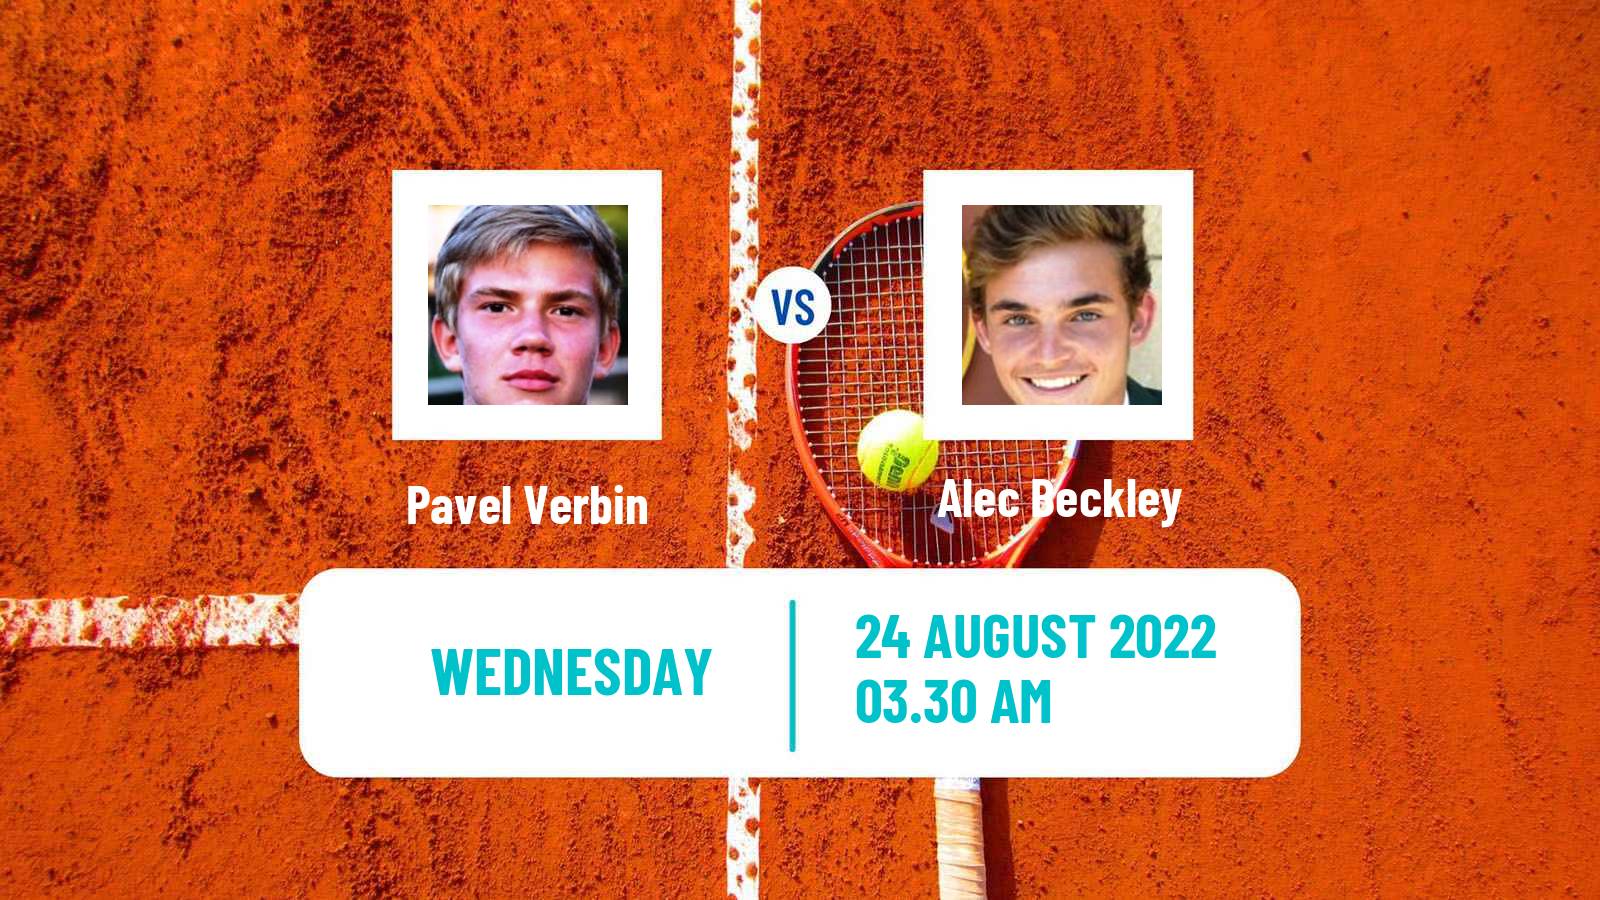 Tennis ITF Tournaments Pavel Verbin - Alec Beckley